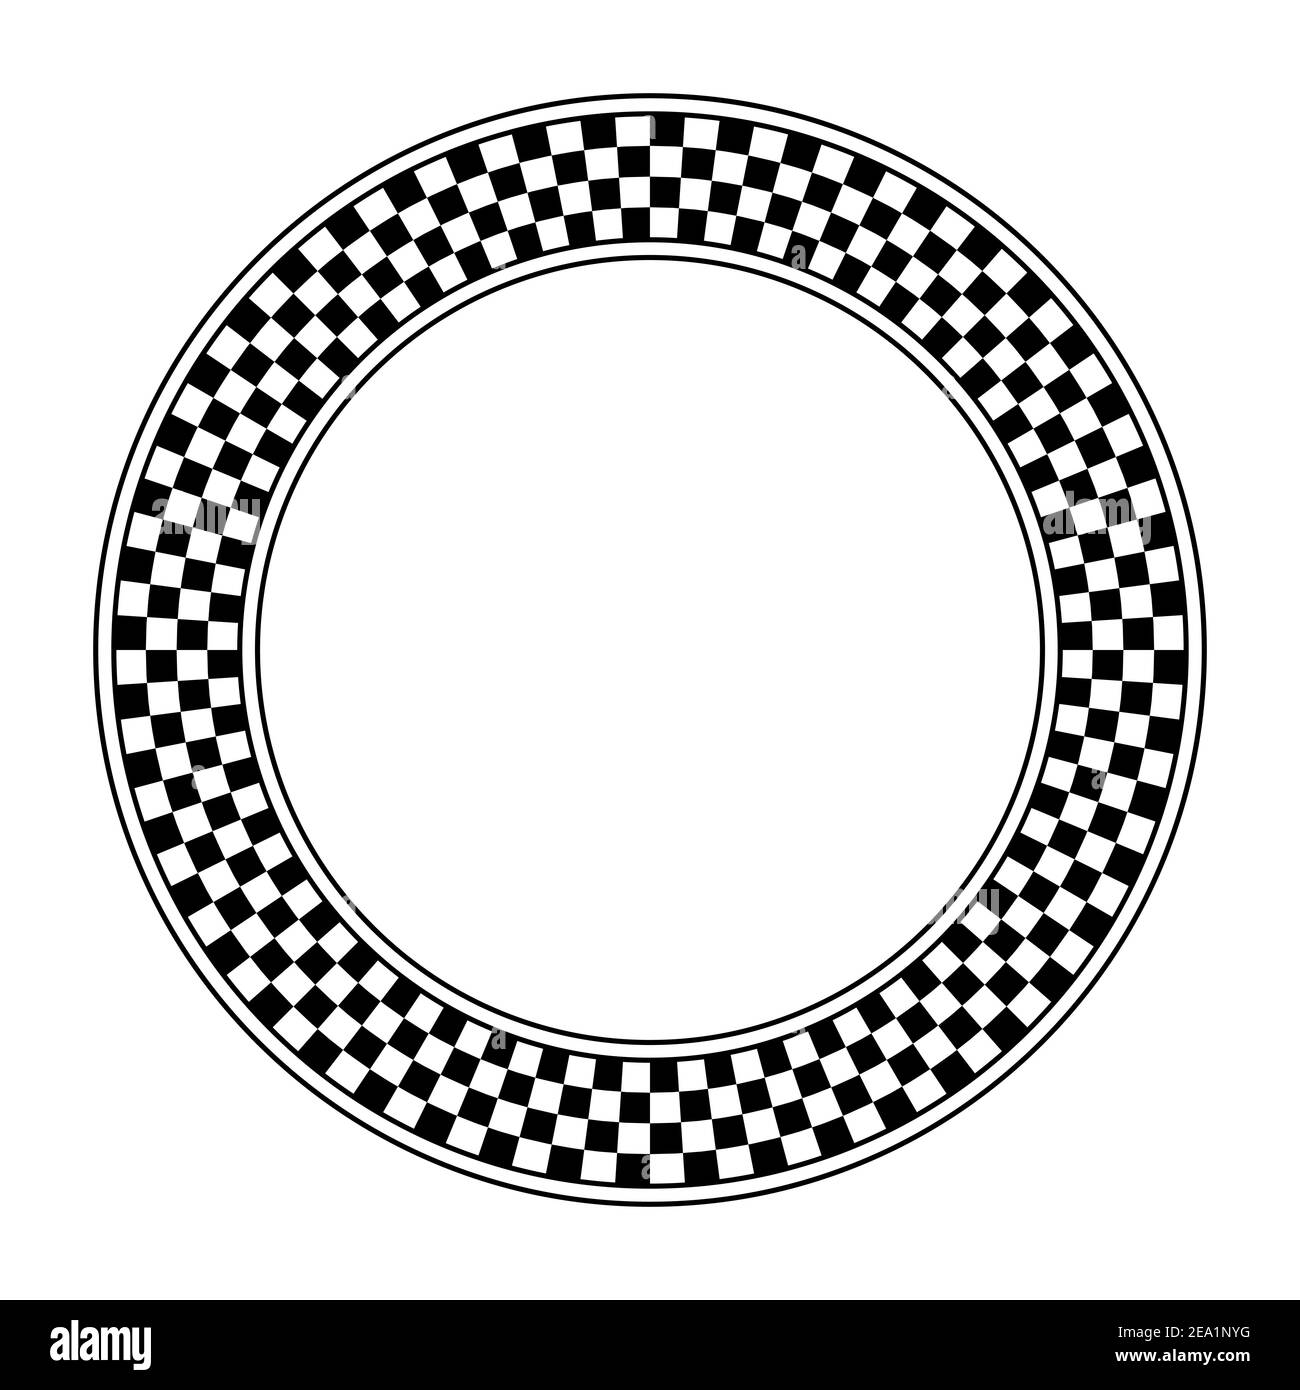 Patrón de tablero de ajedrez, marco de círculo. Marco de patrón de cuadros redondos, hecho de un diagrama de tablero de ajedrez que consiste en cuadrados alternantes negros y blancos. Foto de stock